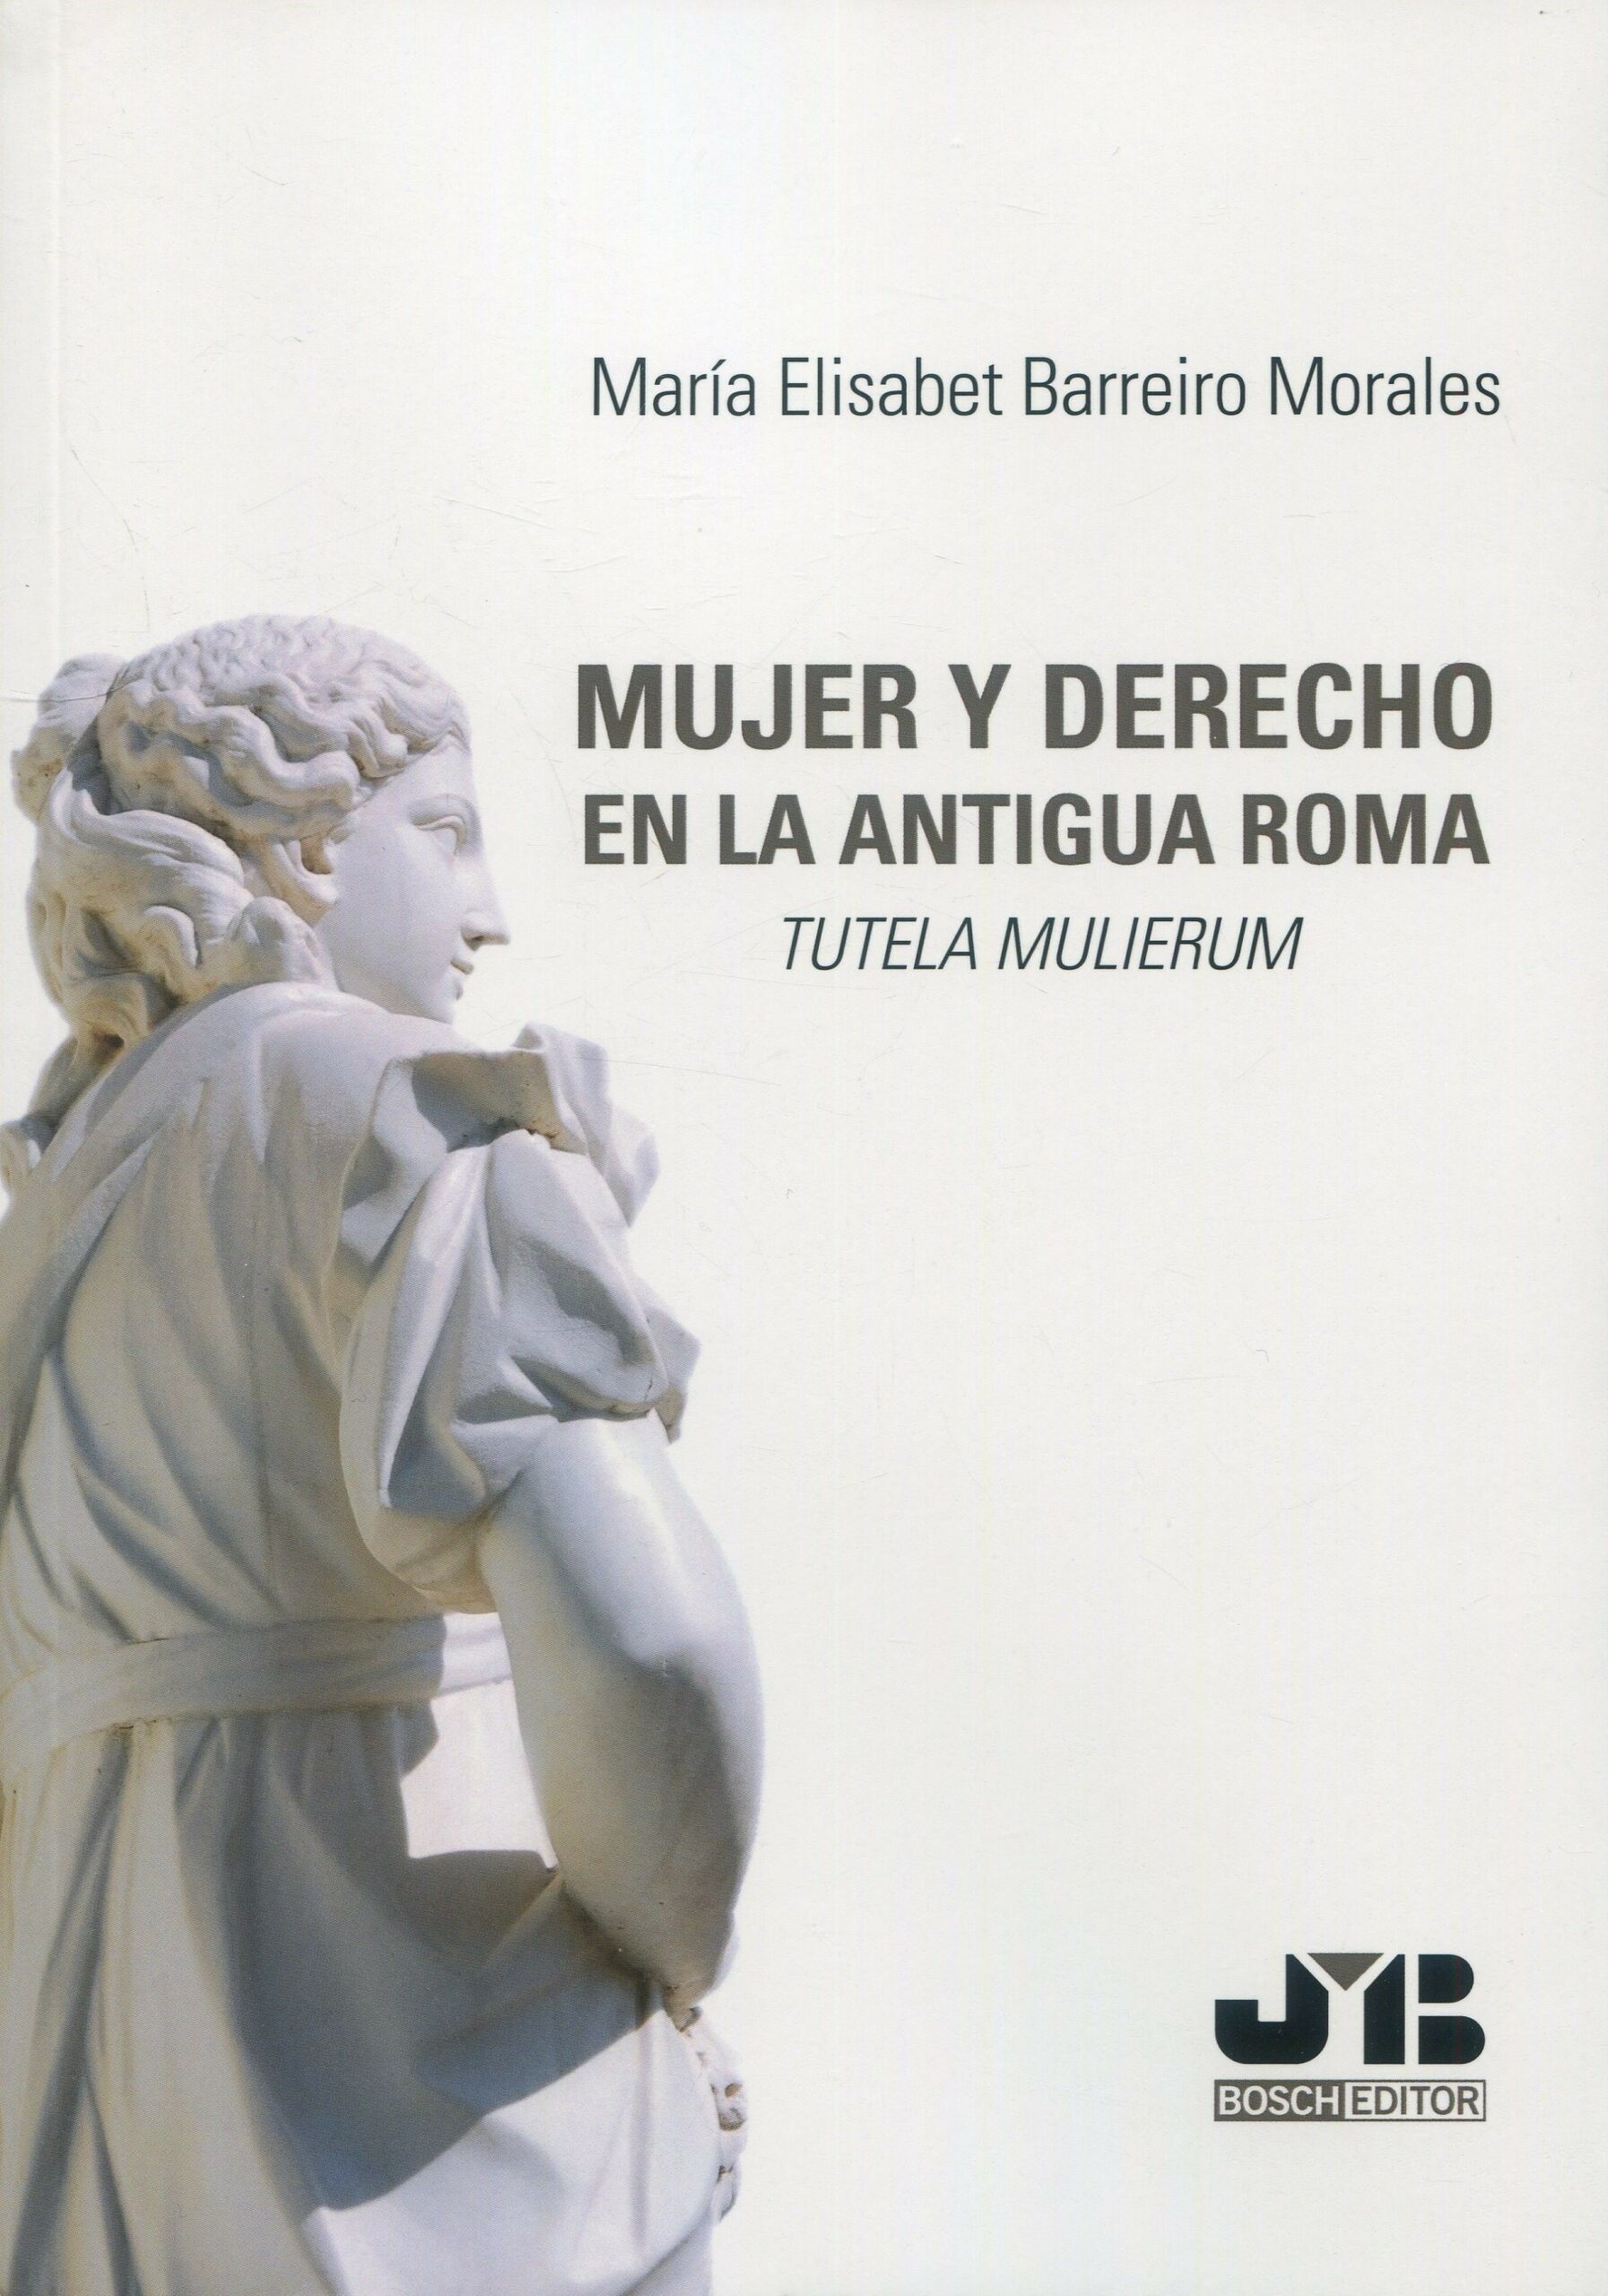 Imagen de portada del libro Mujer y derecho en la Antigua Roma